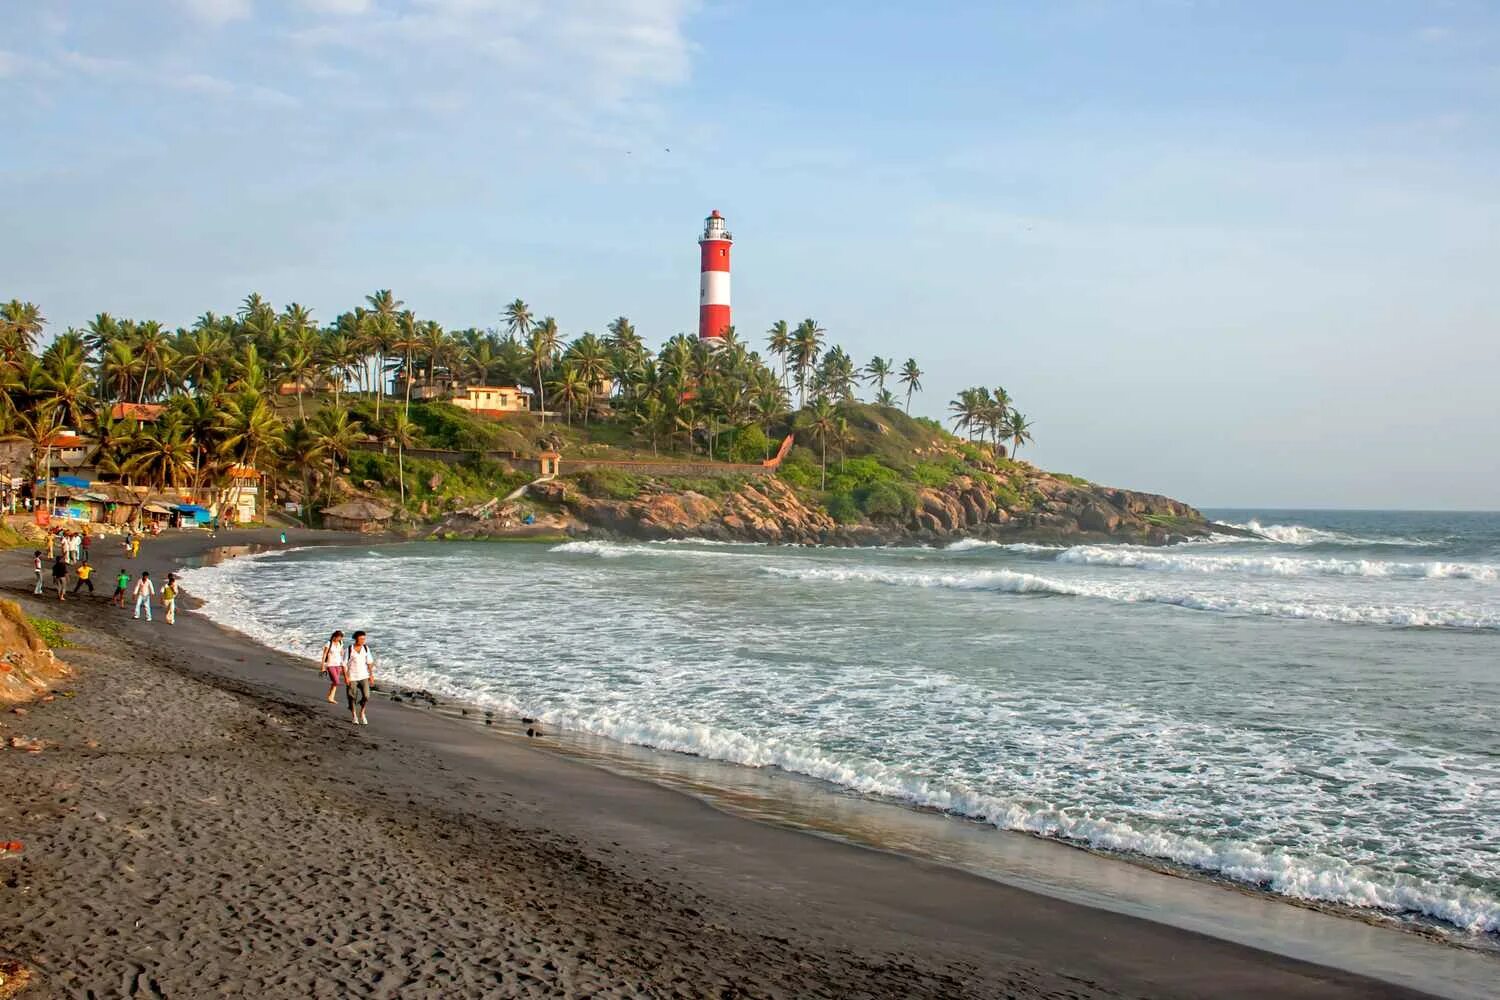 Coast areas. Керала пляж Ковалам. Пляж Ковалам в Керале Индия. Тривандрум пляж Варкала. Штат Керала Ковалам.